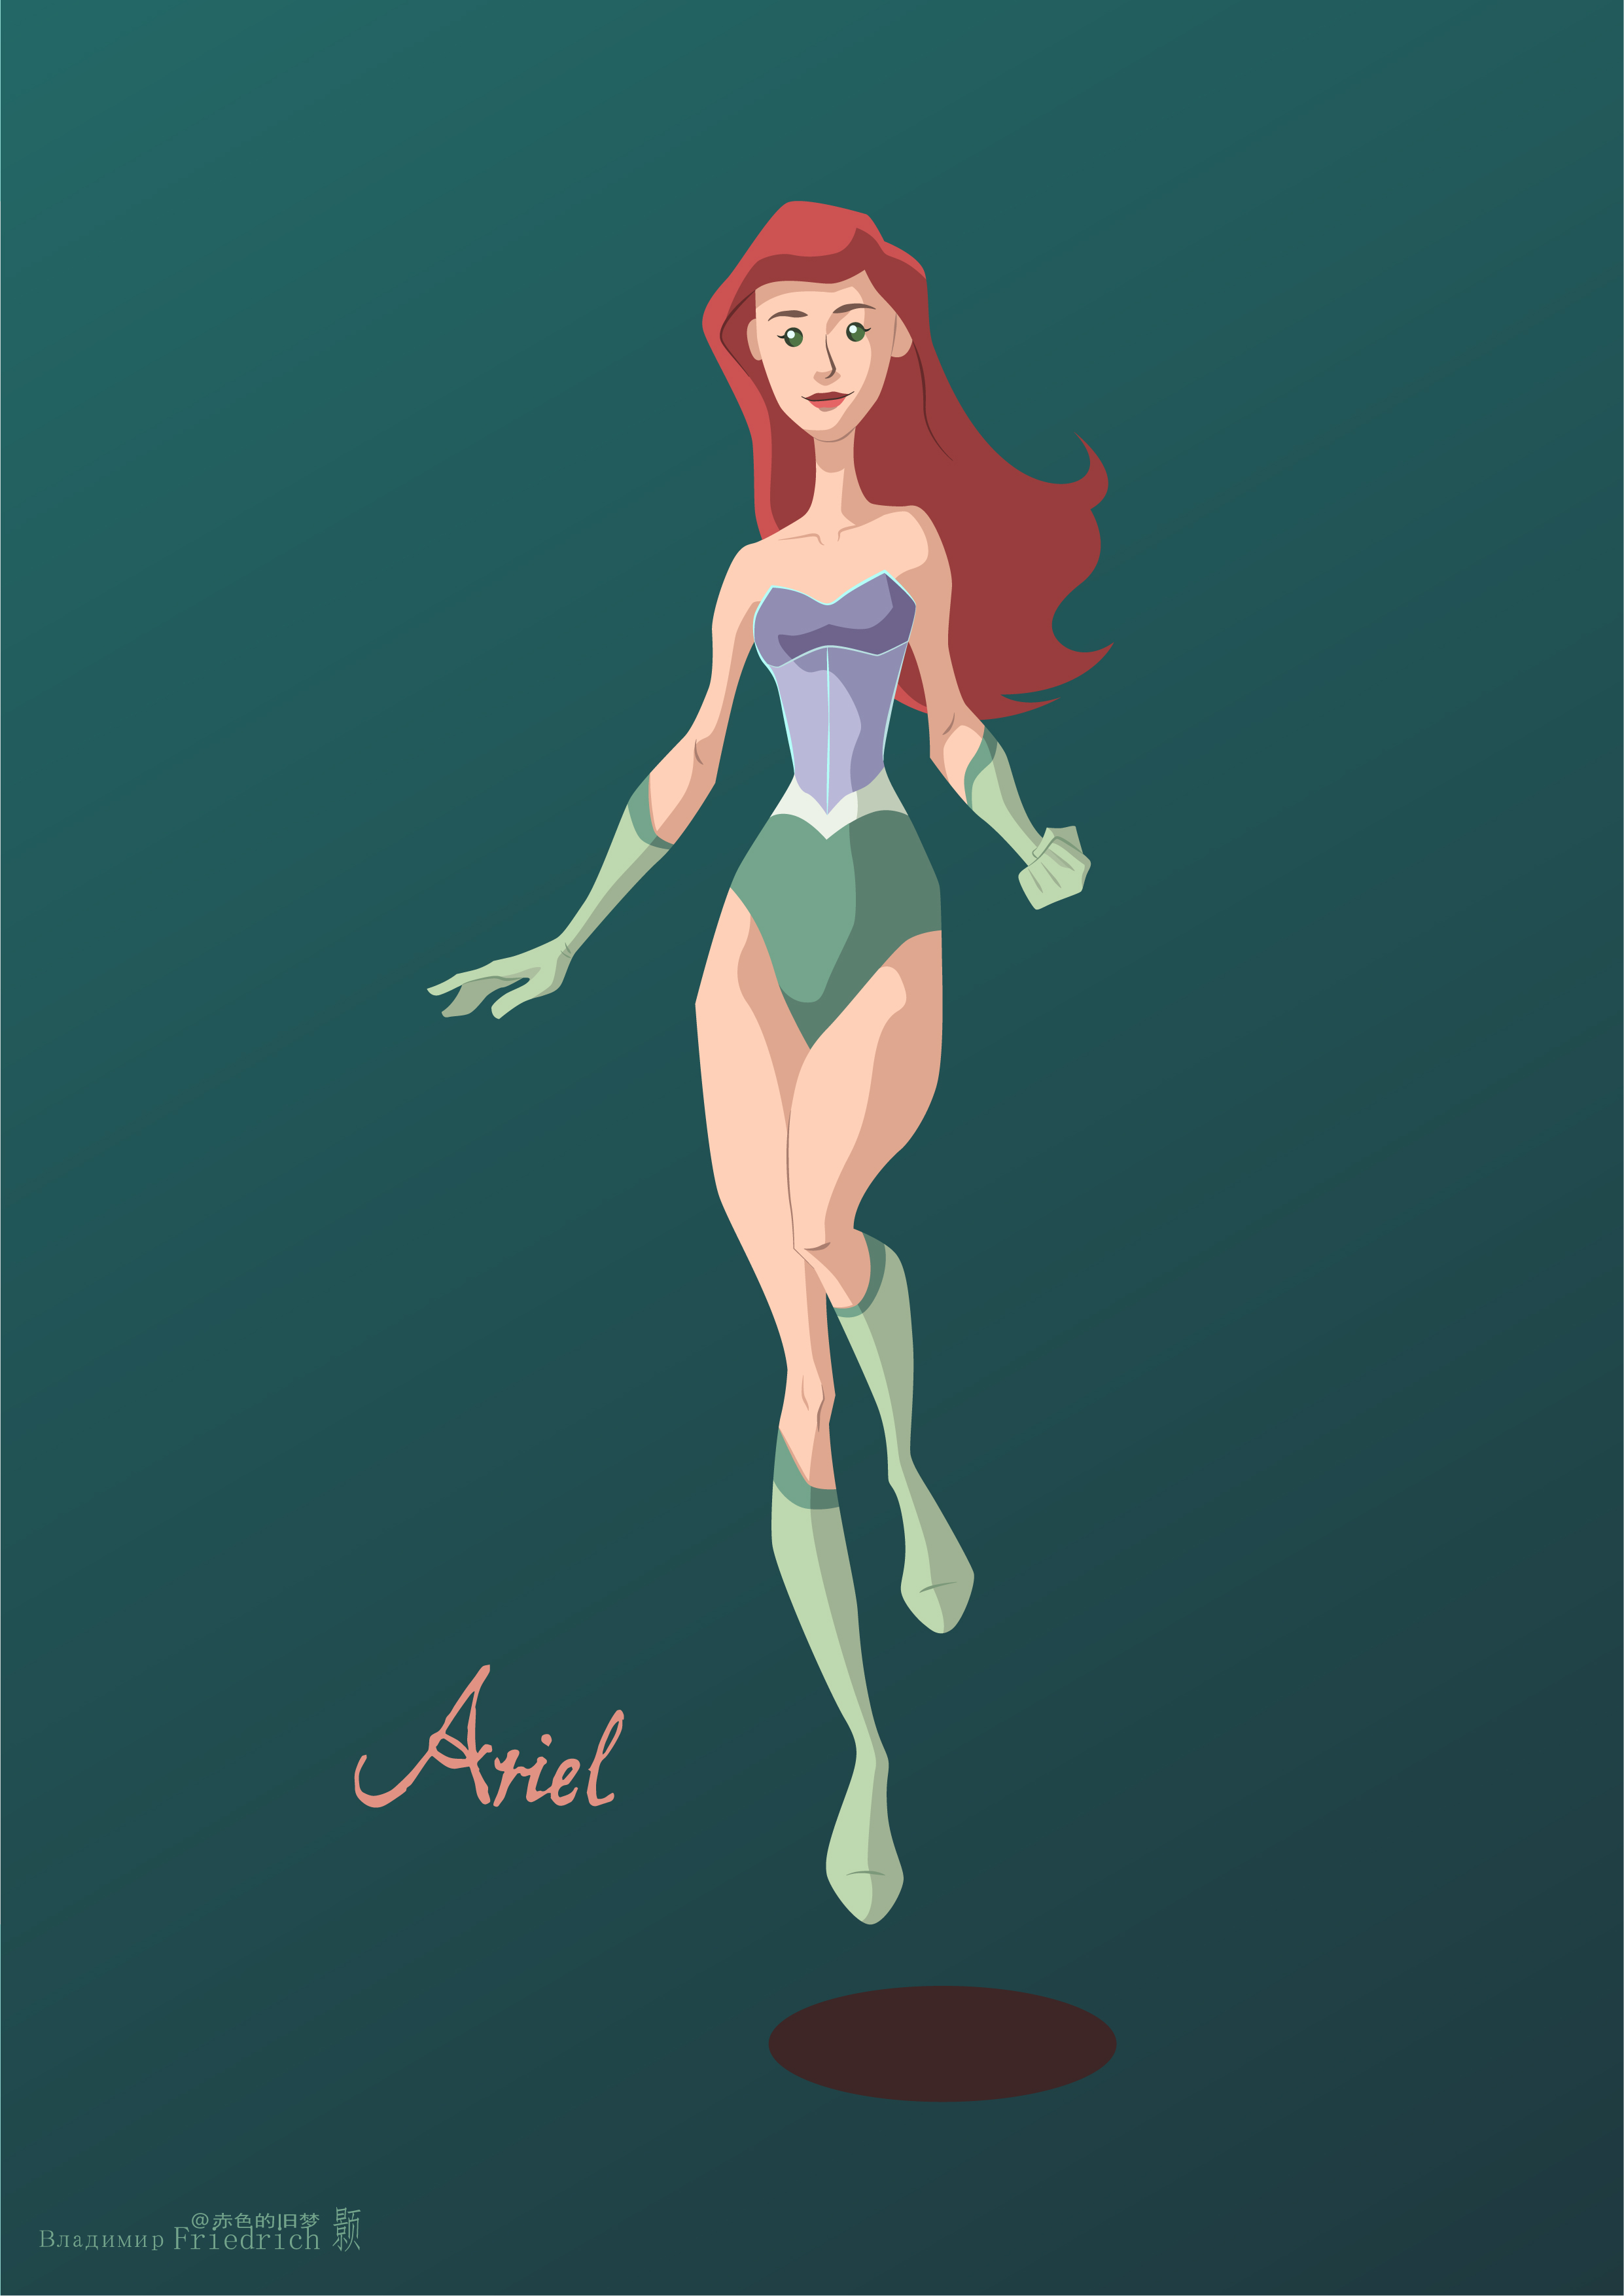 Illustration Flatdesign Disney Princesses Ariel The Little Mermaid The Little Mermaid Superheroines  2482x3509